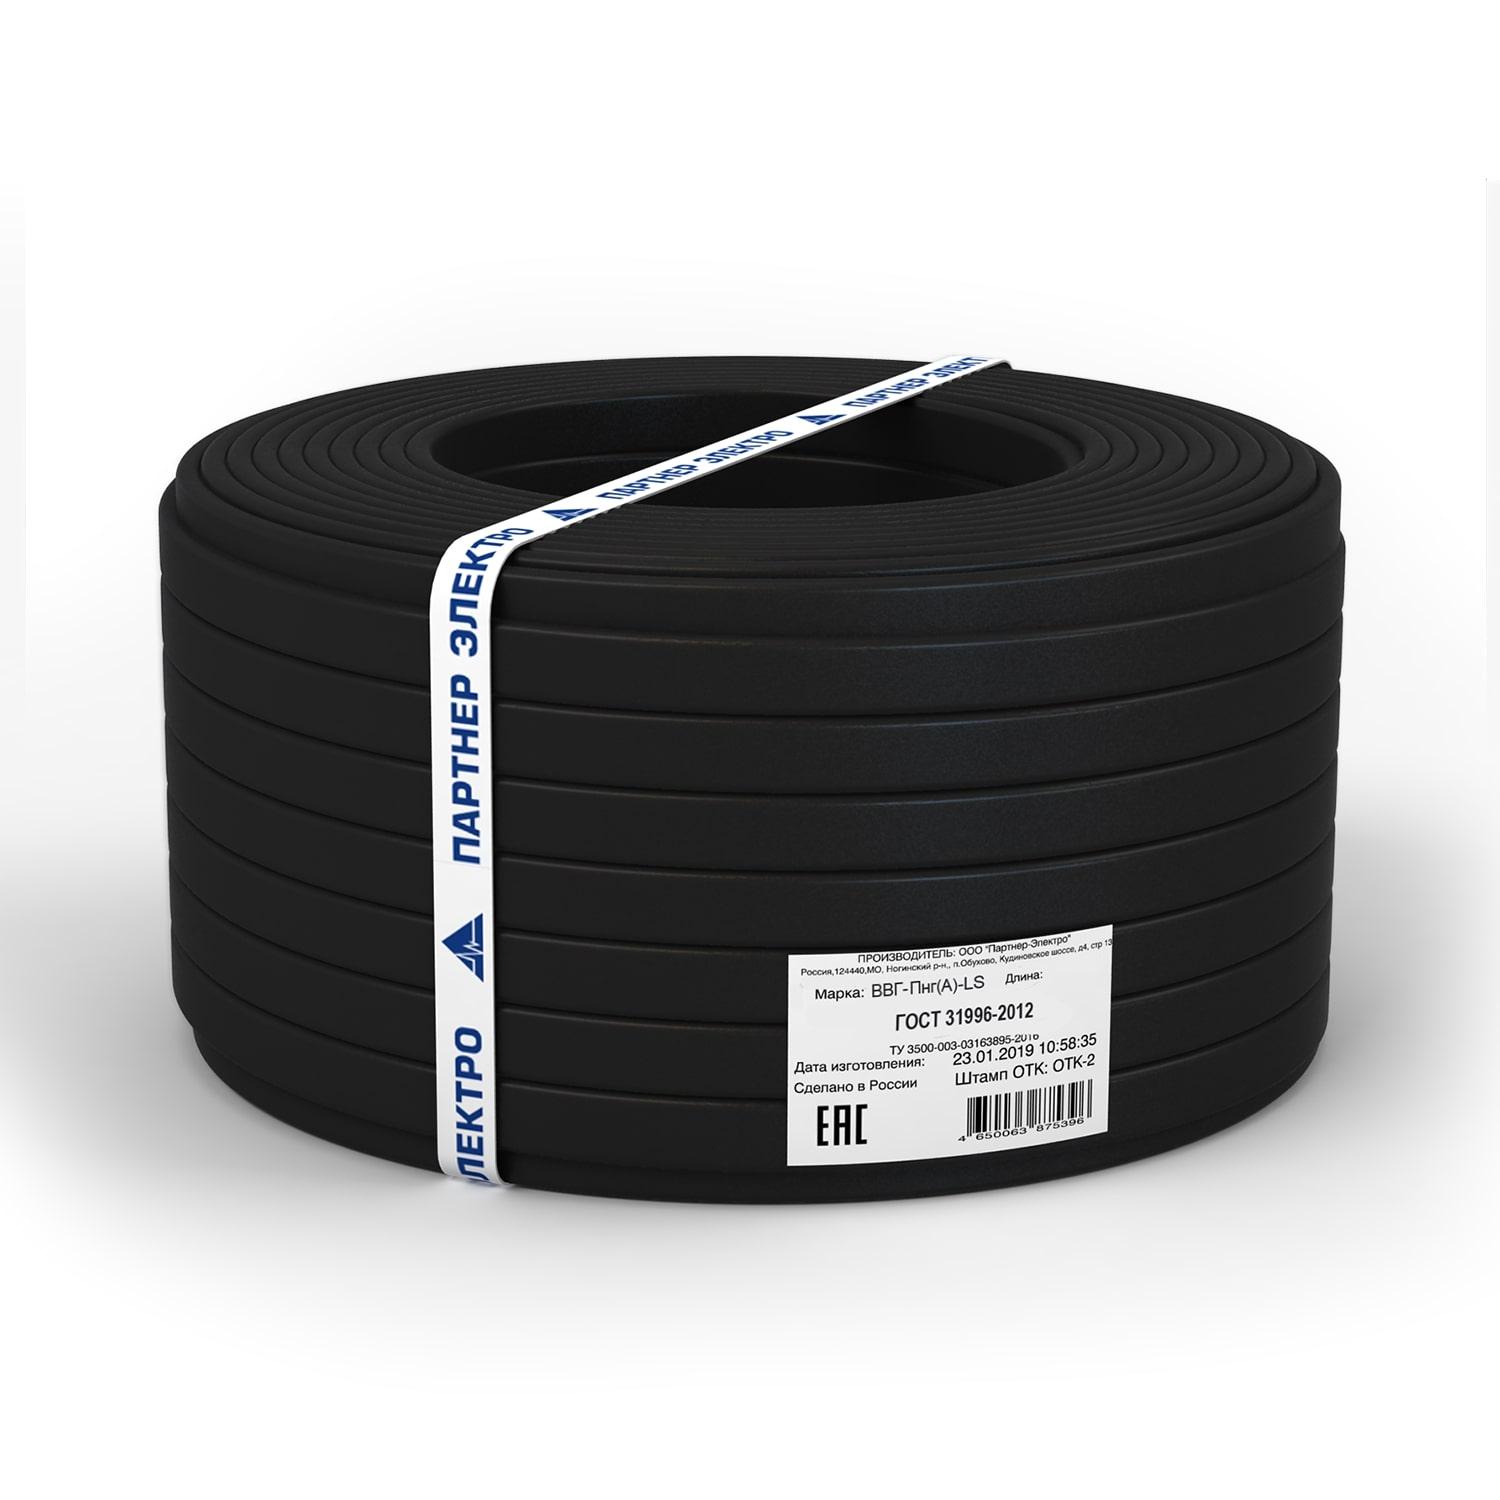 фото Силовой кабель Партнер-Электро Кабель ВВГ-ПнгГОСТ (А)-LS 2х2,5 ГОСТ (10м), черный